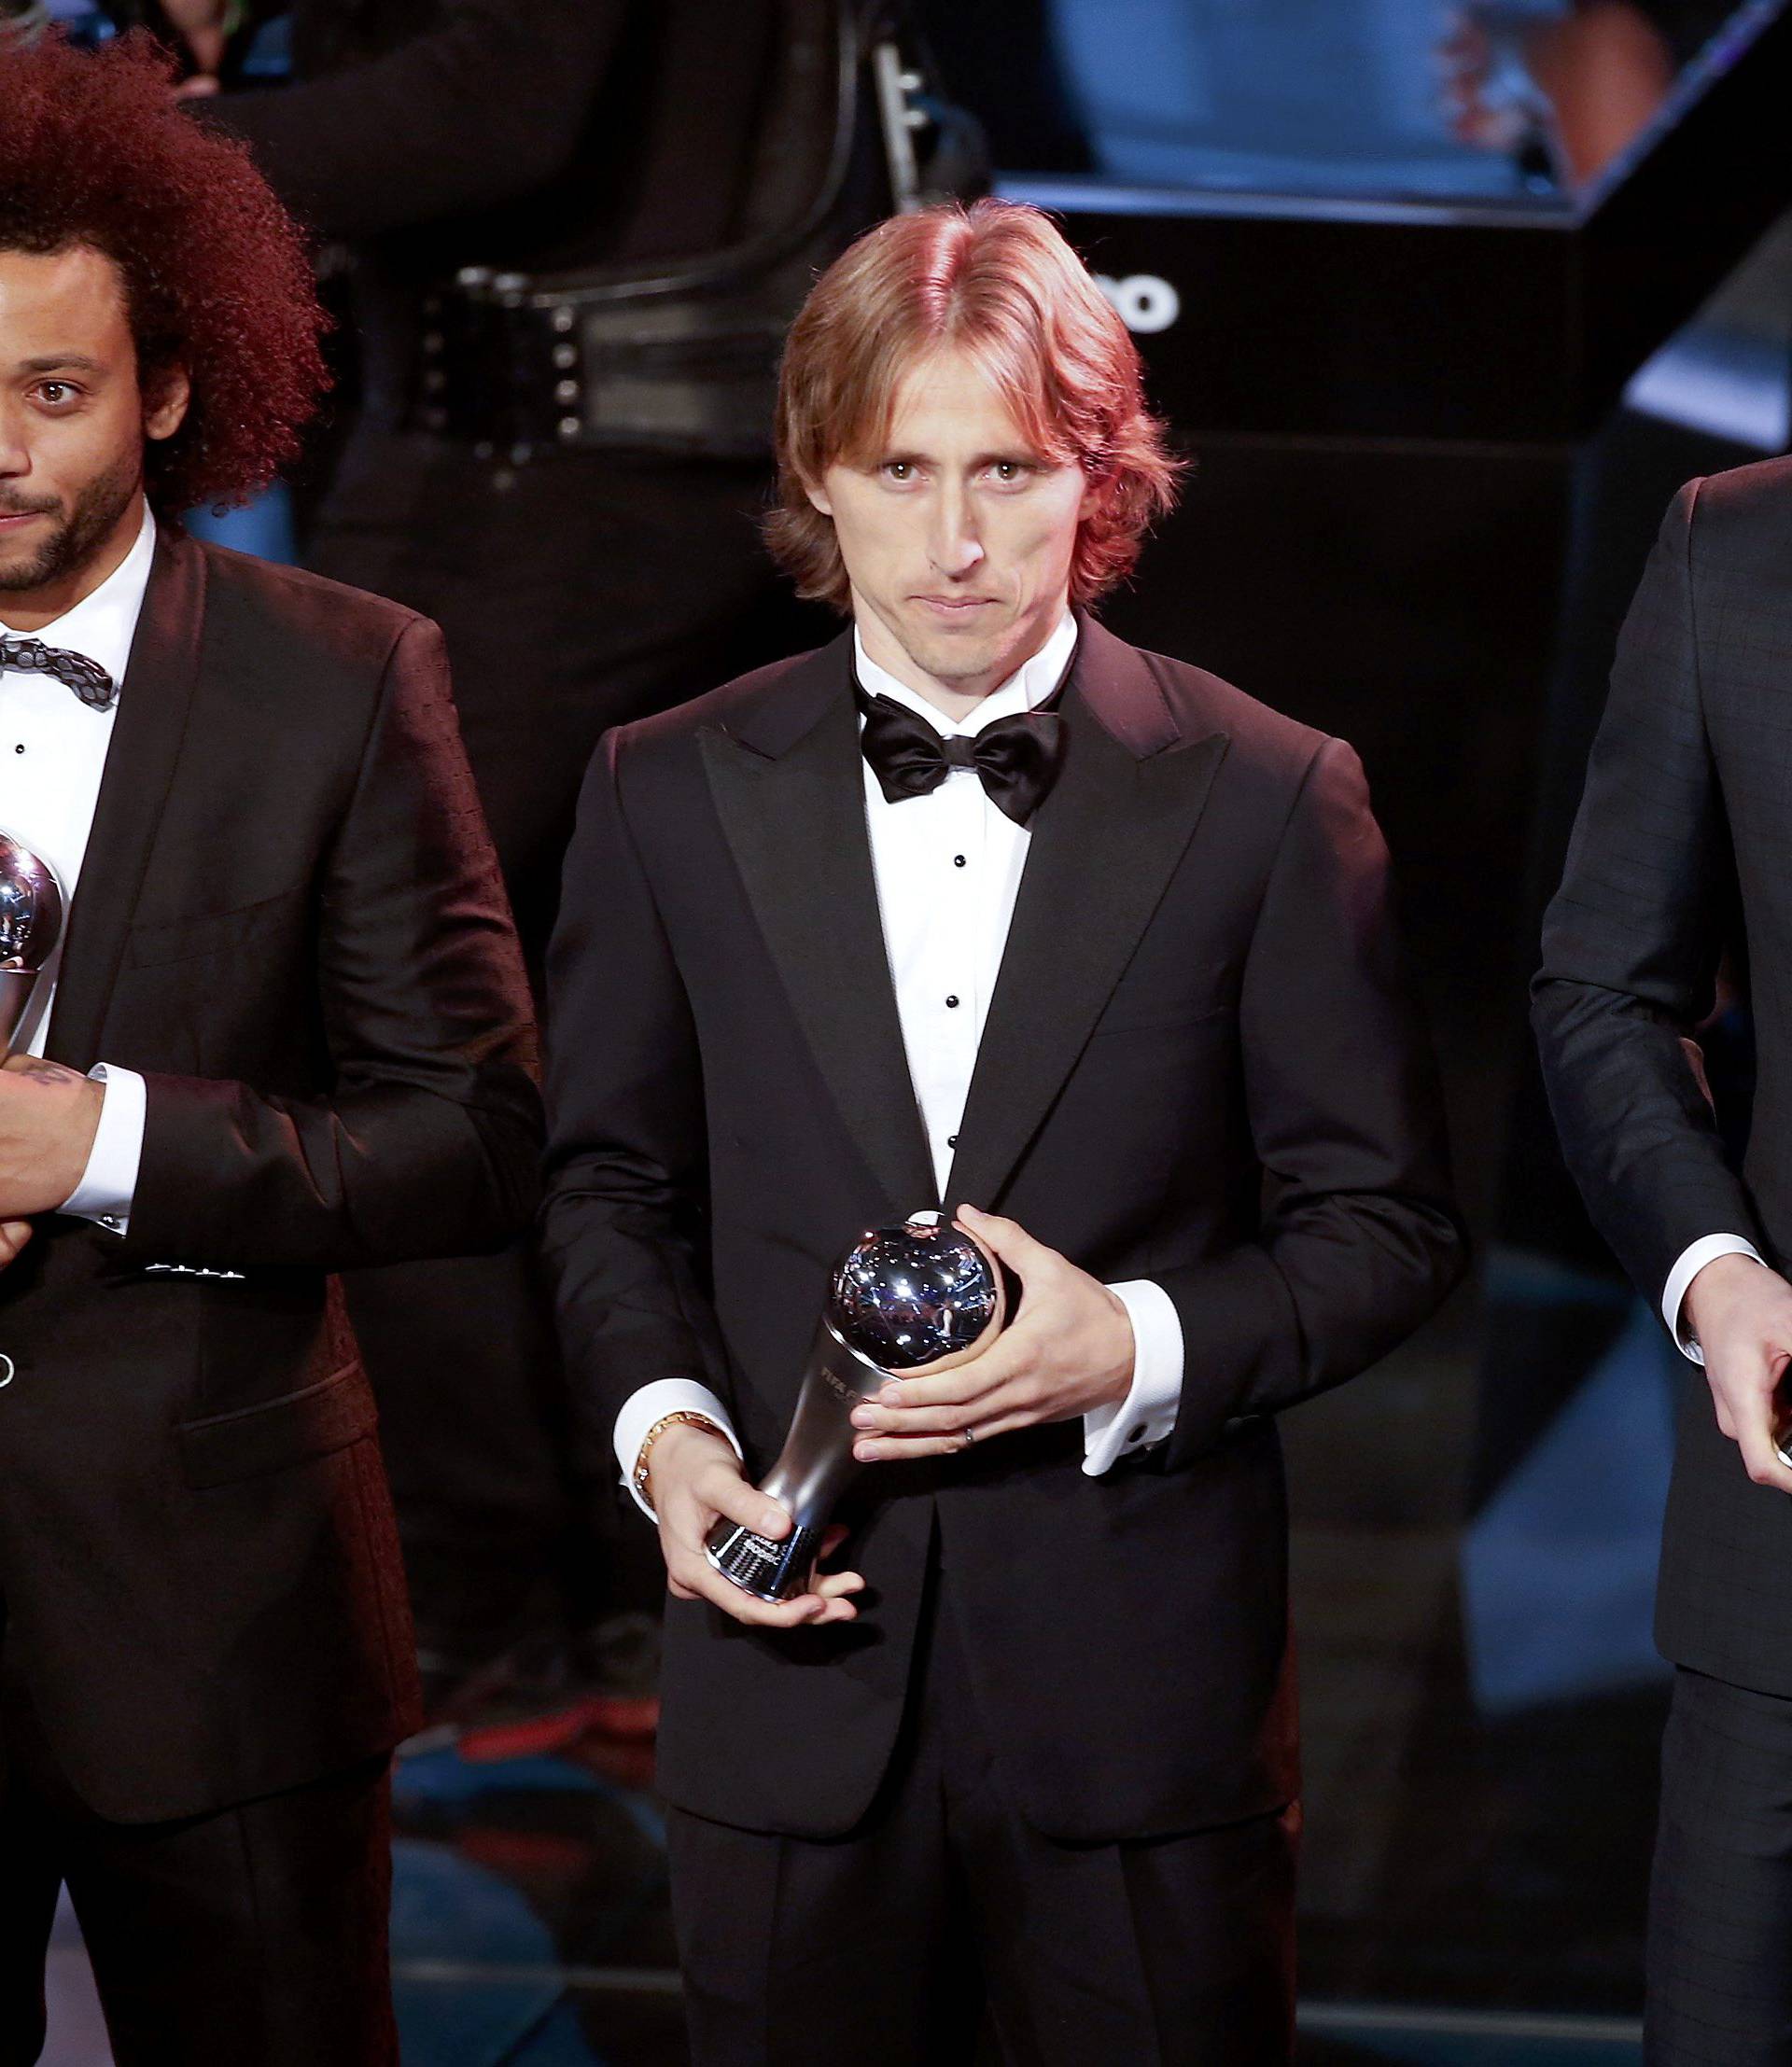 Football Soccer - FIFA Awards Ceremony -  FIFA World 11 award